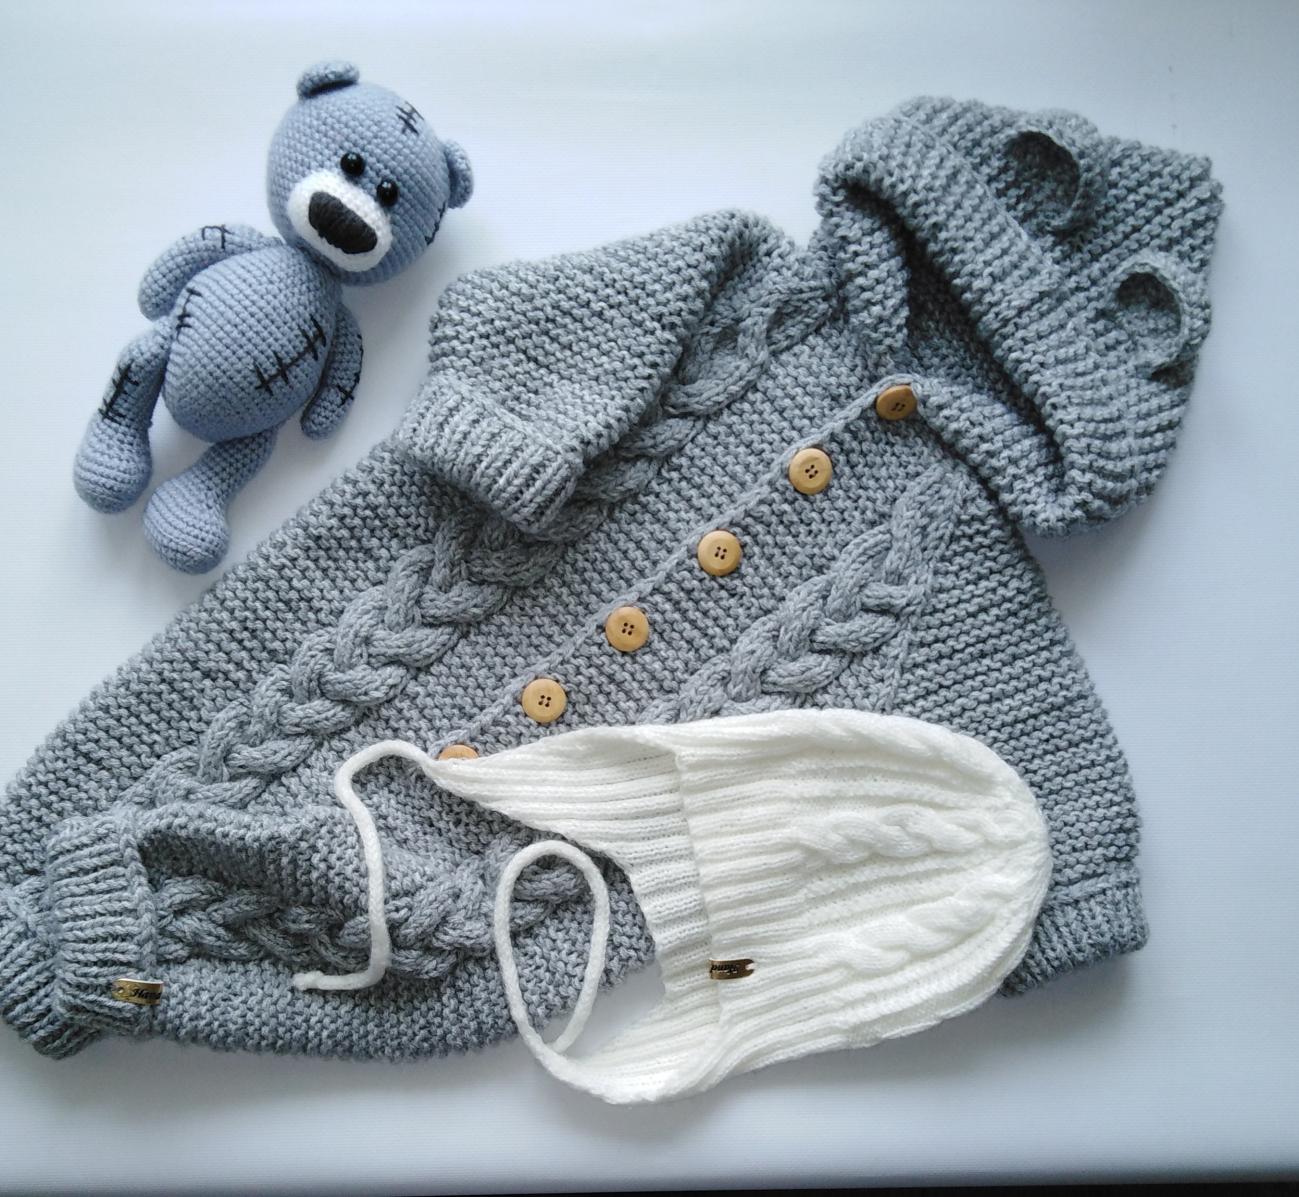 Вязанный комбинезон на малыша: Вязаные комбинезоны для новорожденных купить в интернет-магазине BabyForest.ru